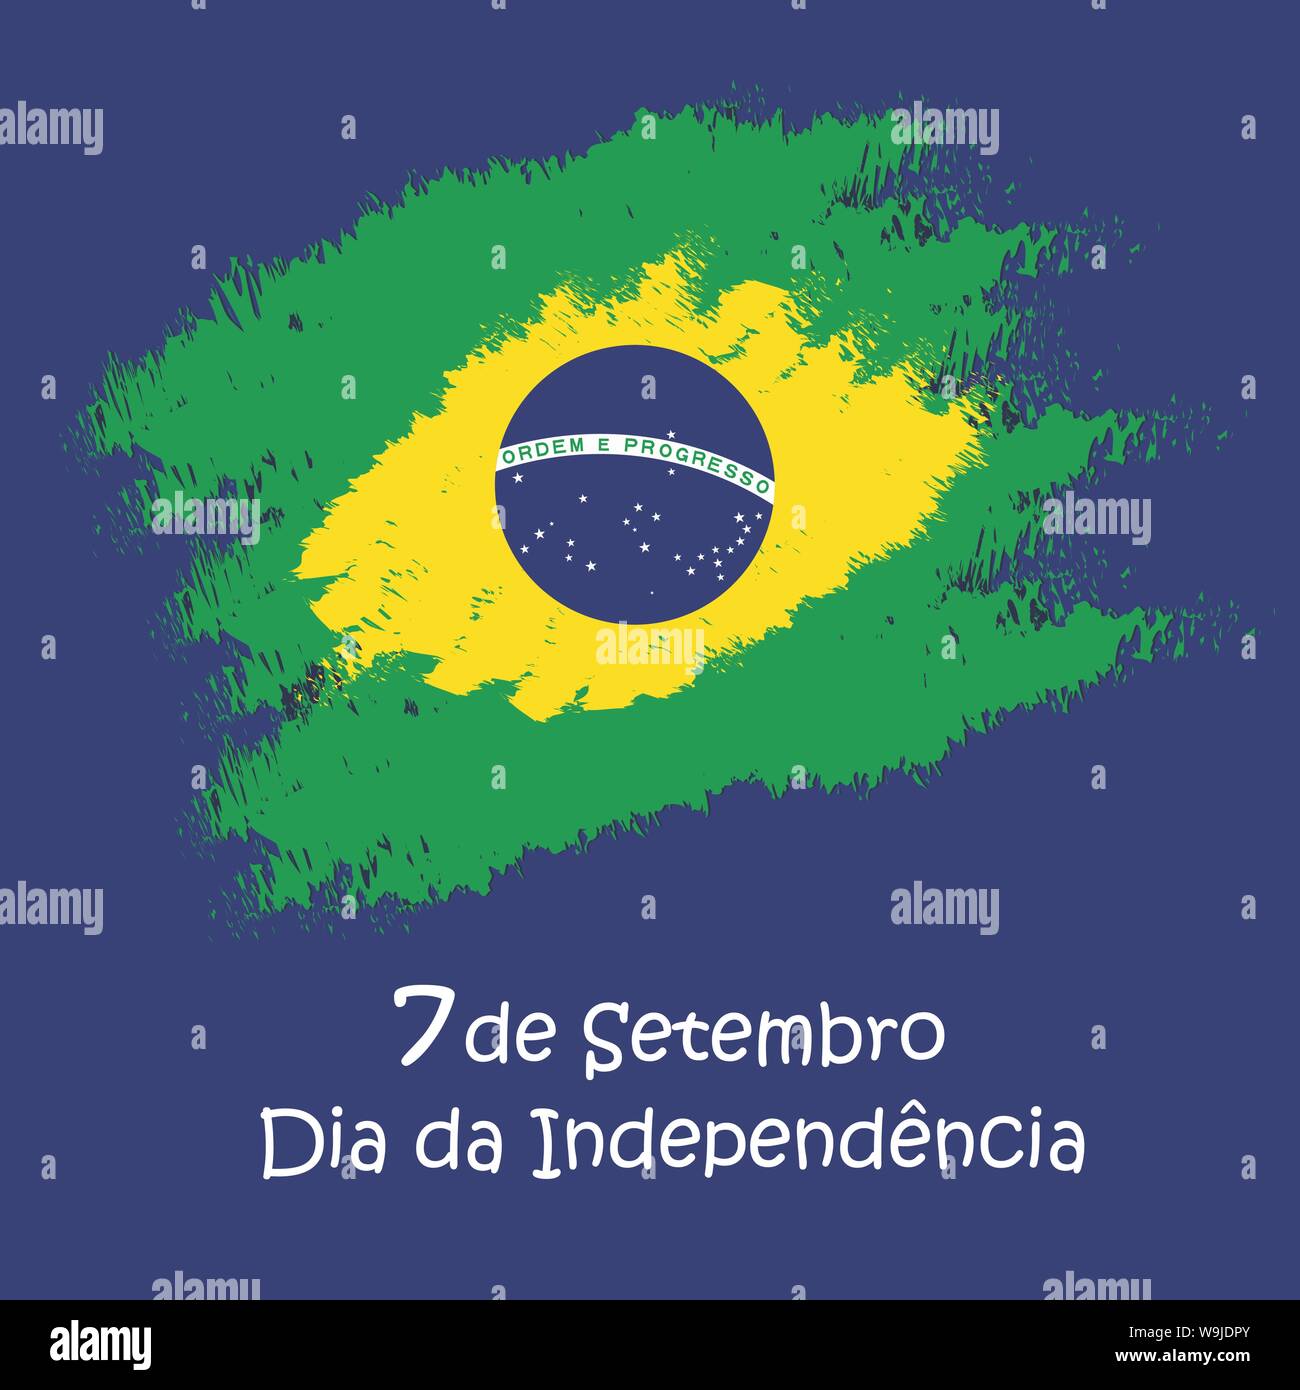 Brasilien Independence Day Feier Grußkarte Abbildung. Stock Vektor